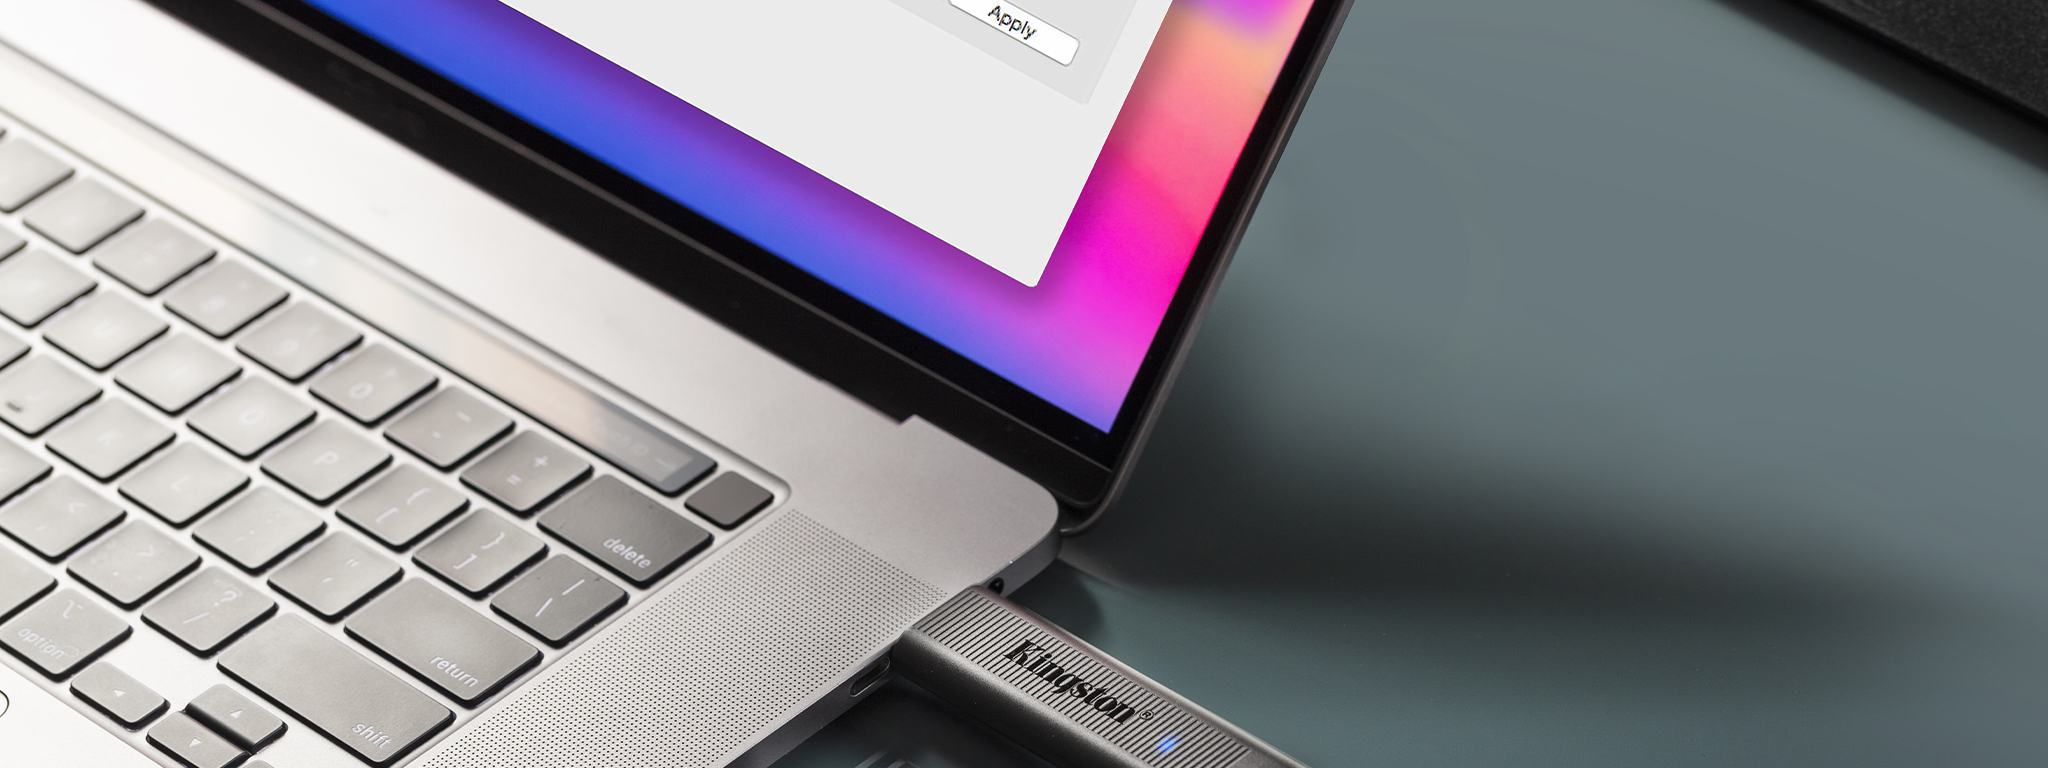 2 Drive USB DataTraveler Max; uno collegato a un laptop e l’altro sulla scrivania